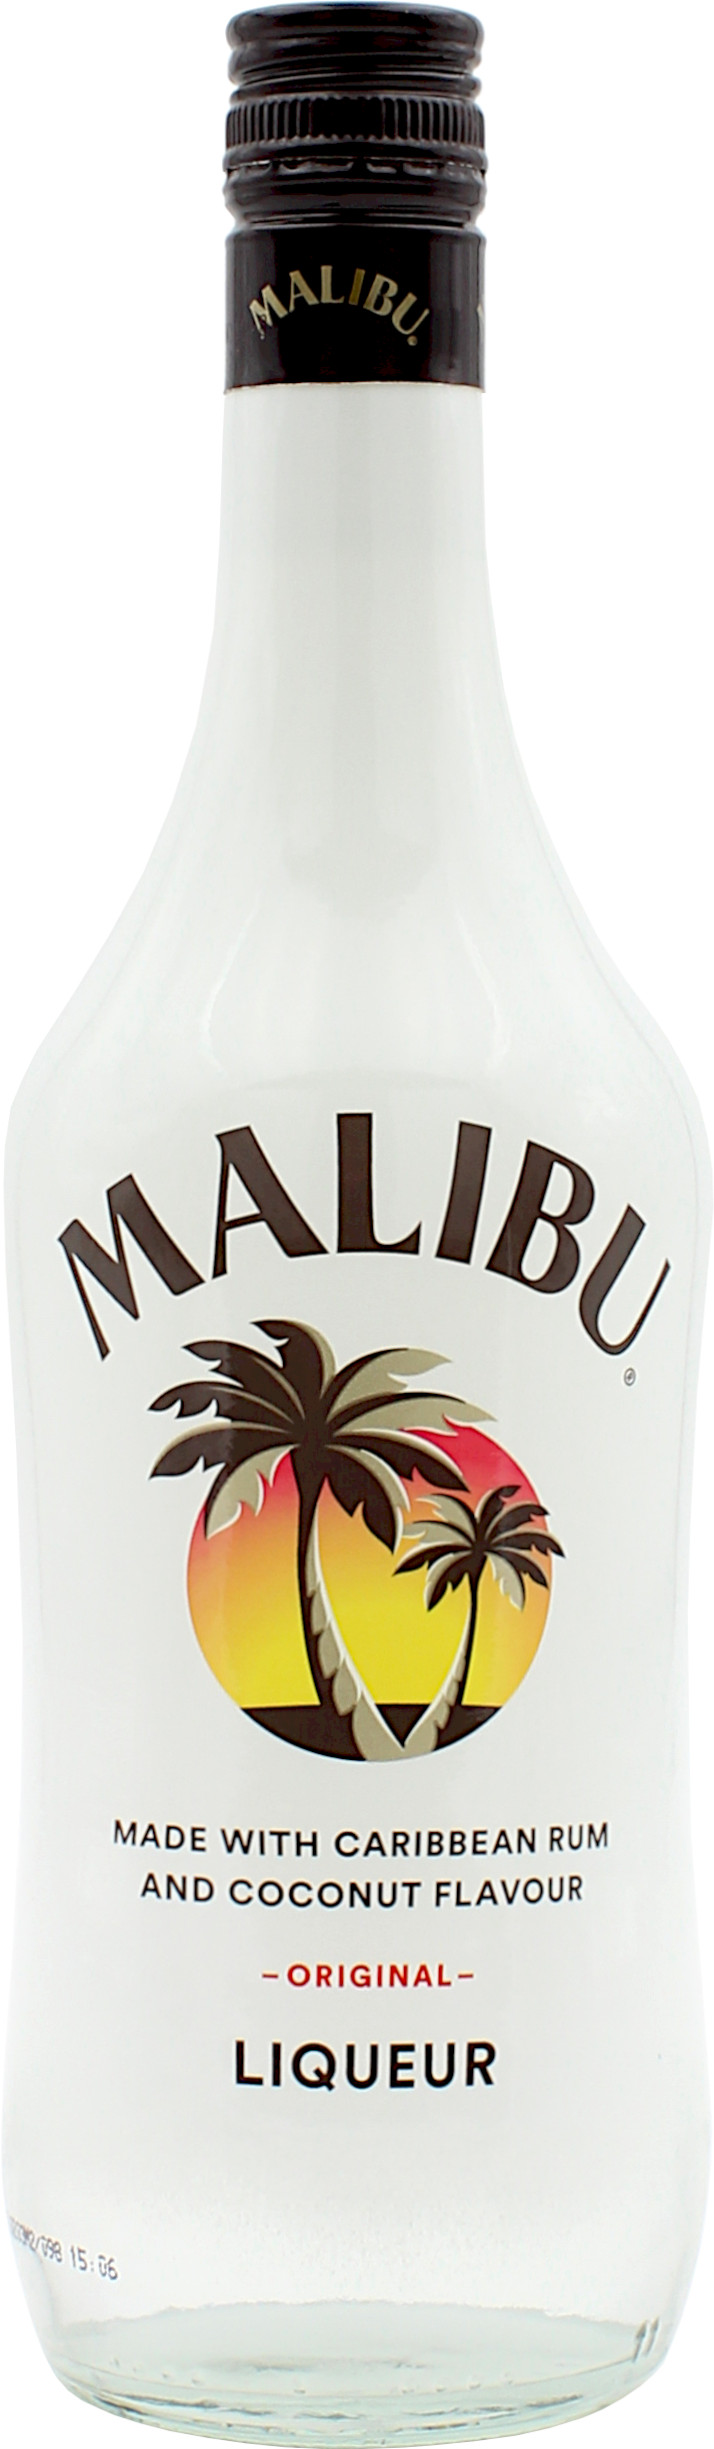 Malibu 21.0% 1 Liter